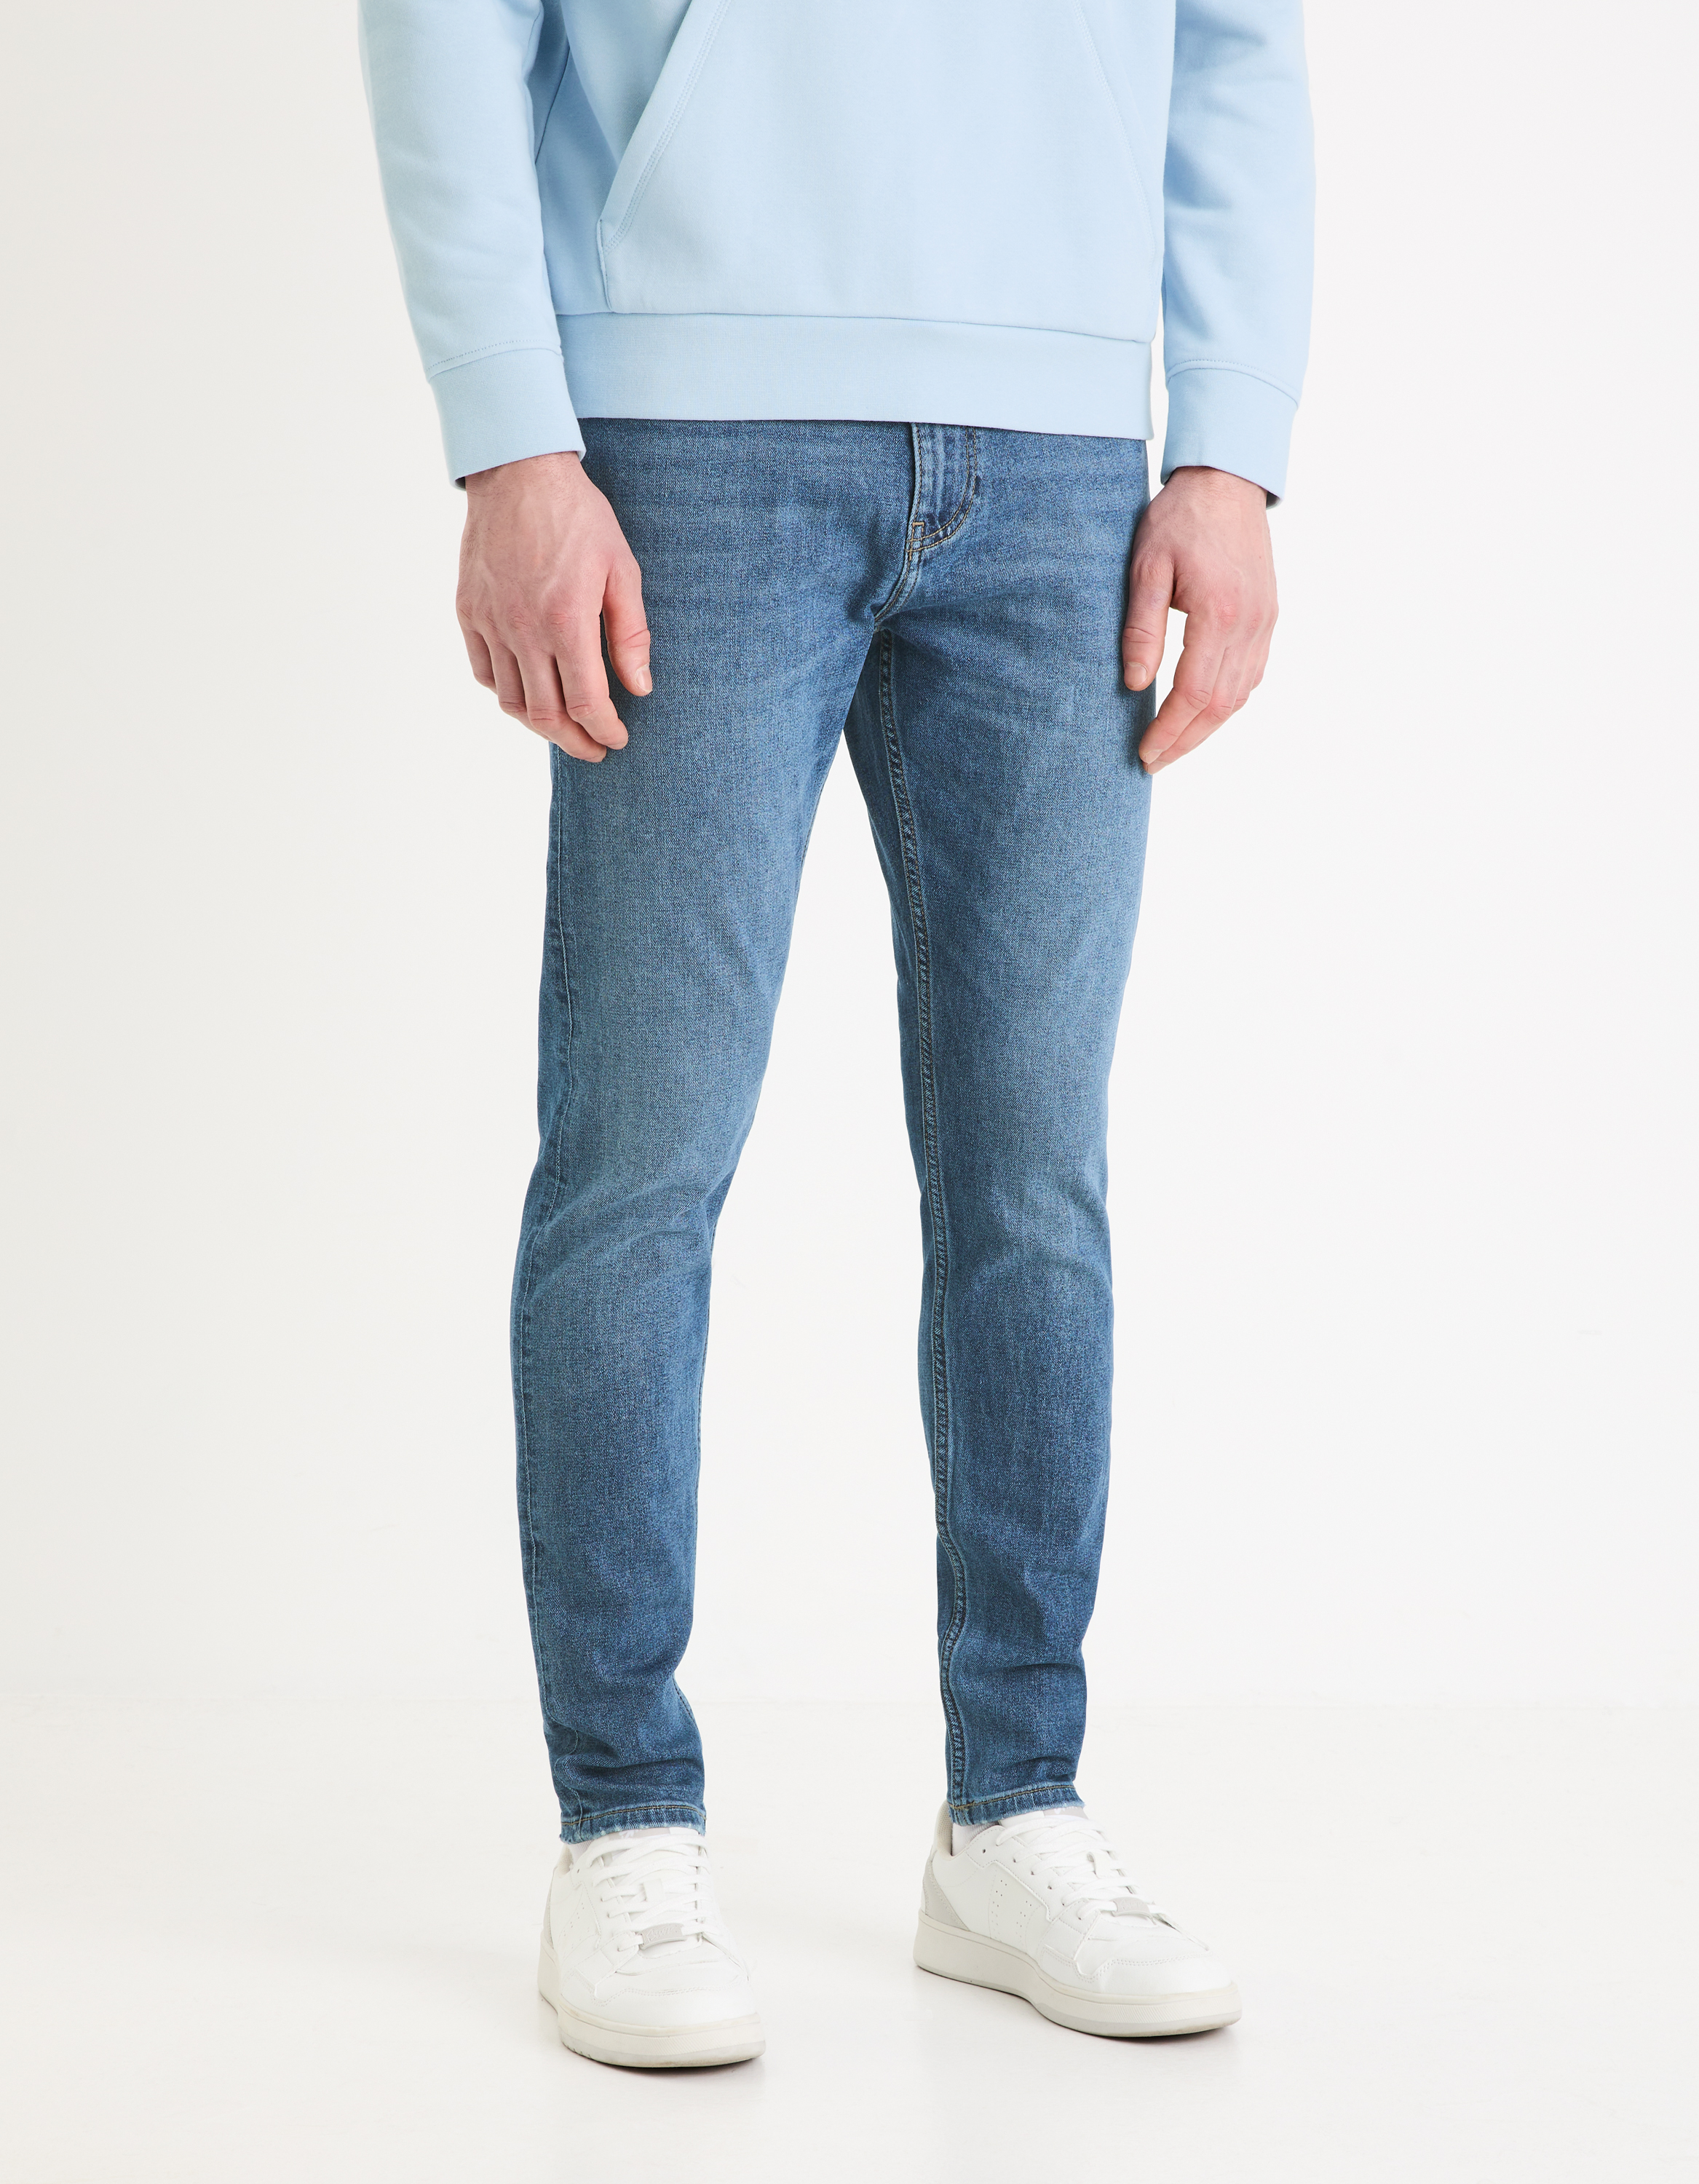 Celio Skinny C45 Foskinny Jeans - Men's